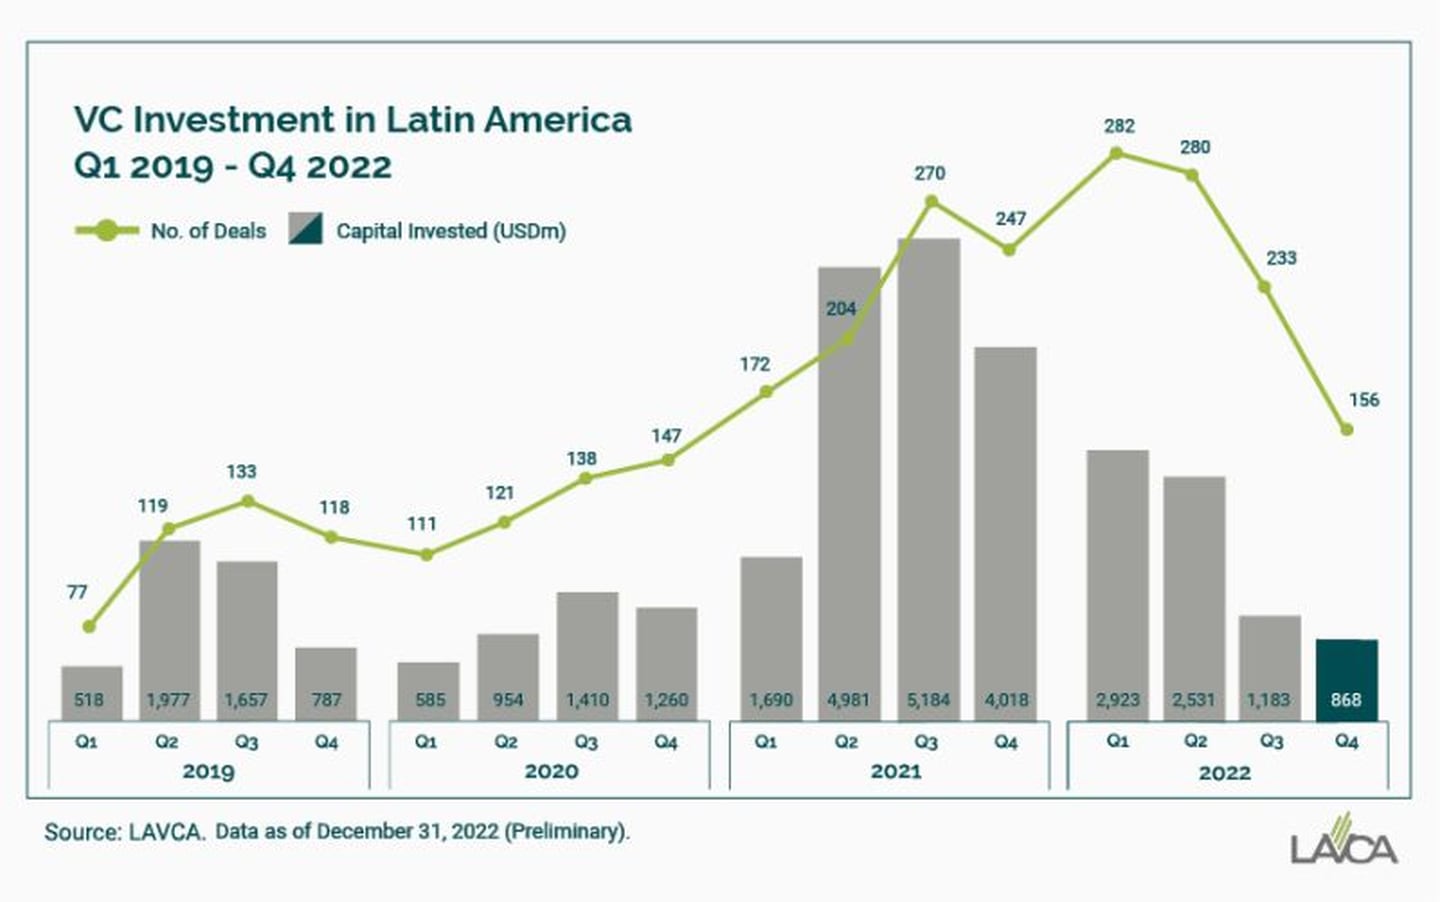 Comportamiento del venture capital en startups en Latinoamérica, según LAVCA.dfd